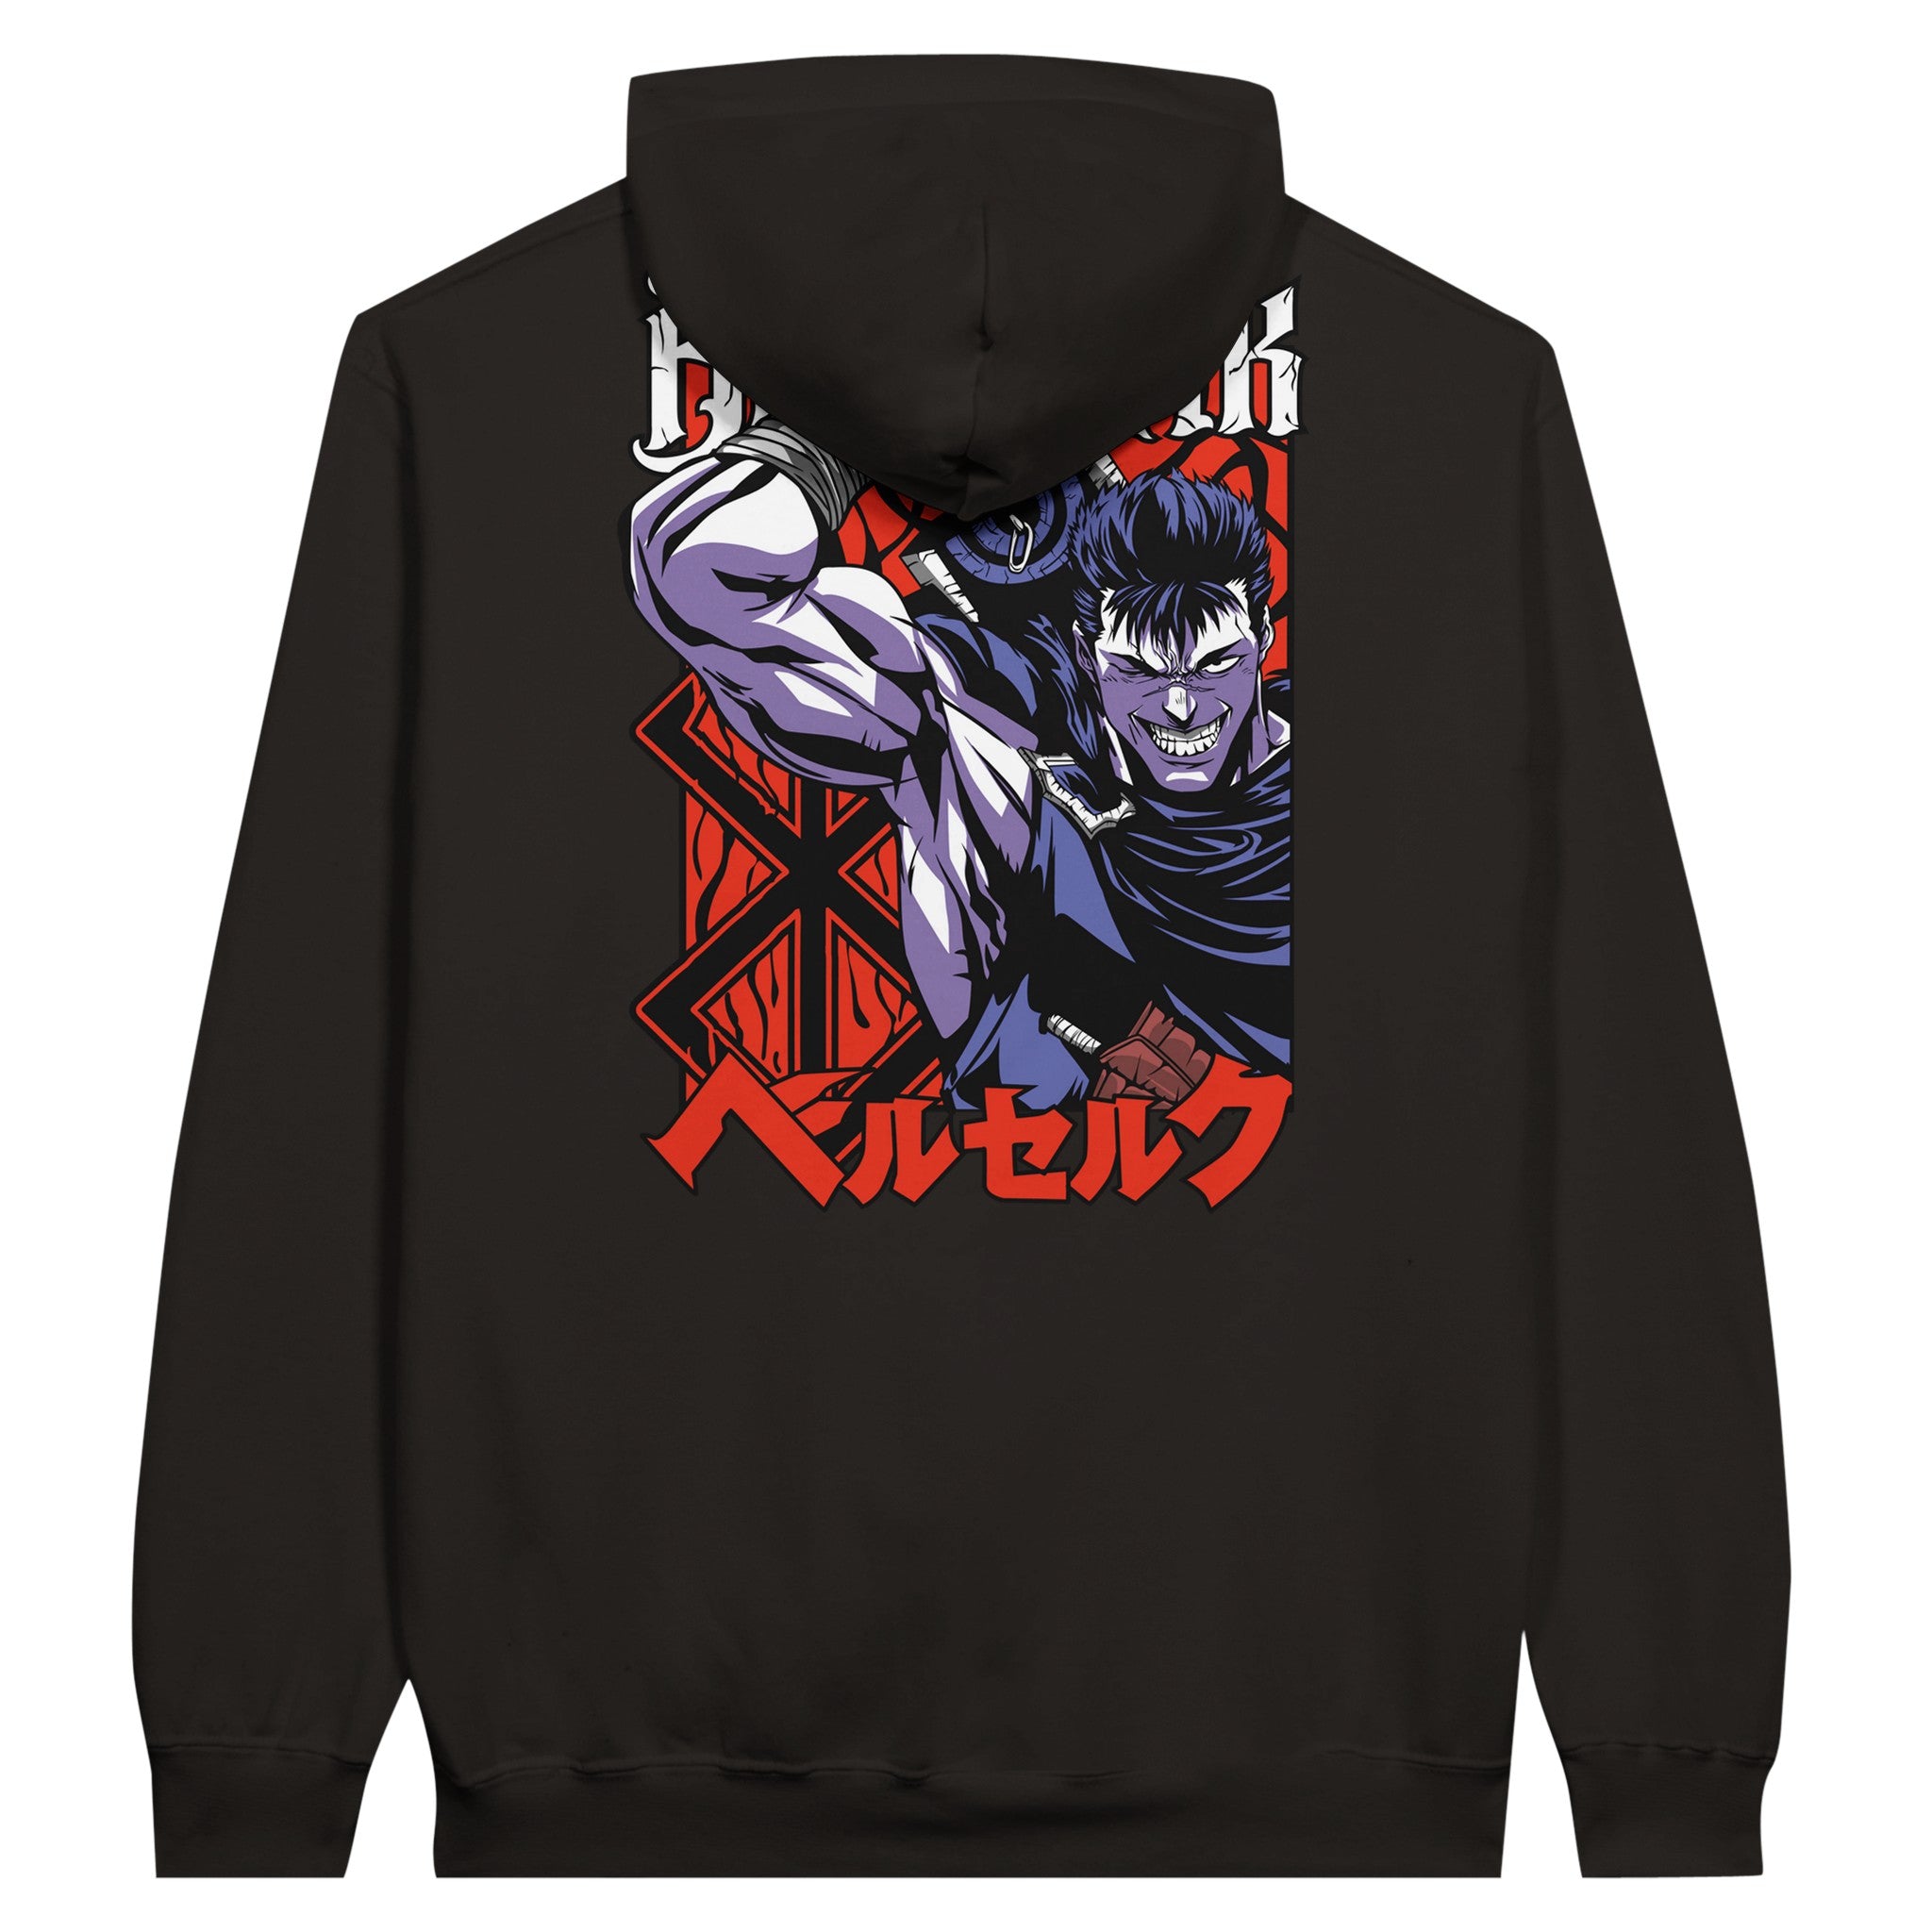 shop and buy berserk anime clothing guts hoodie